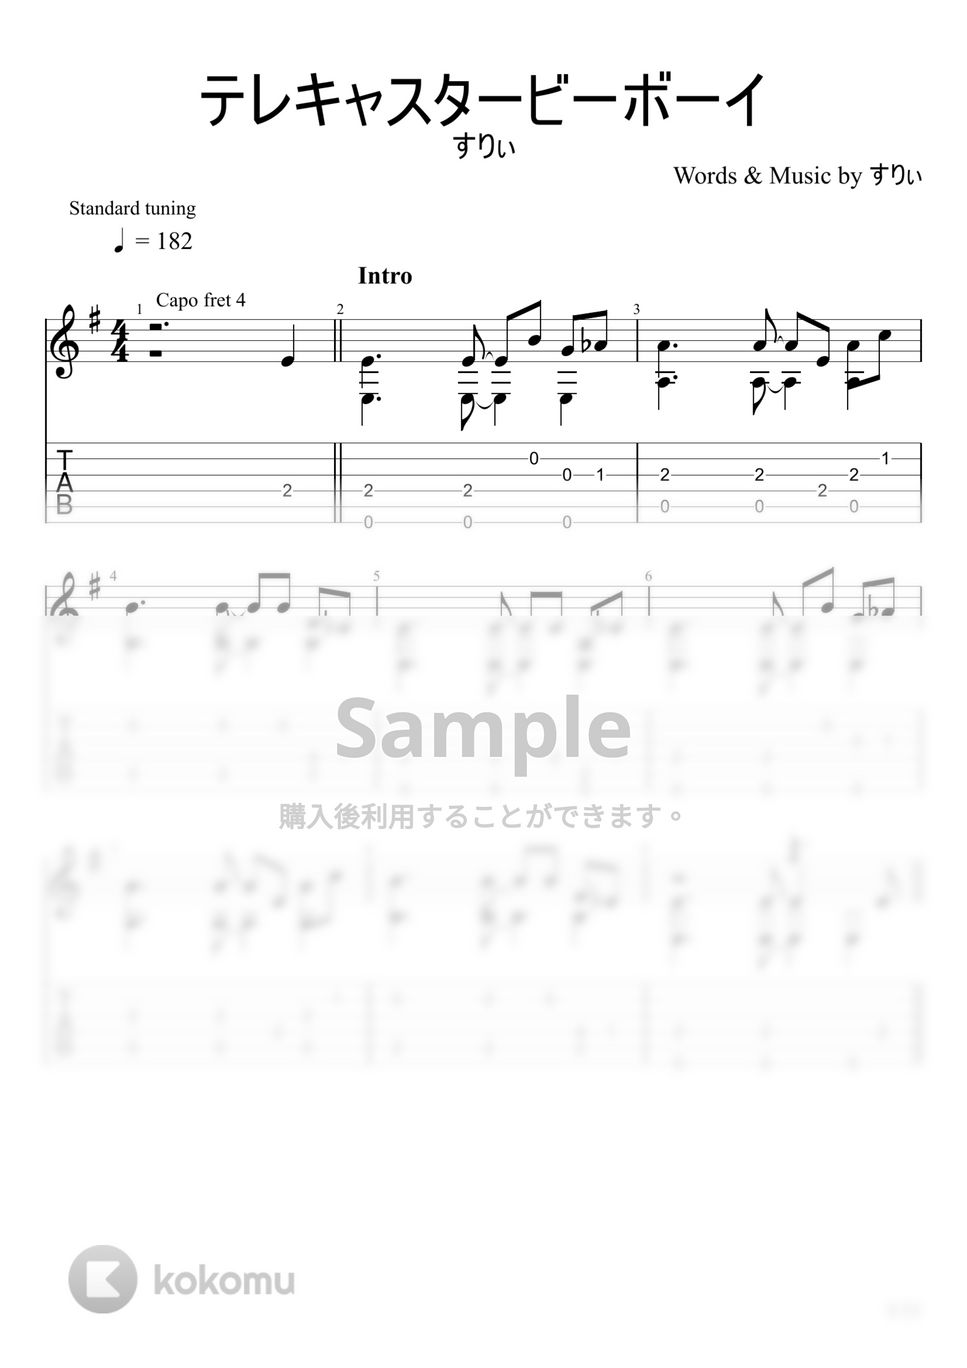 すりぃ - テレキャスタービーボーイ (ソロギター) by u3danchou